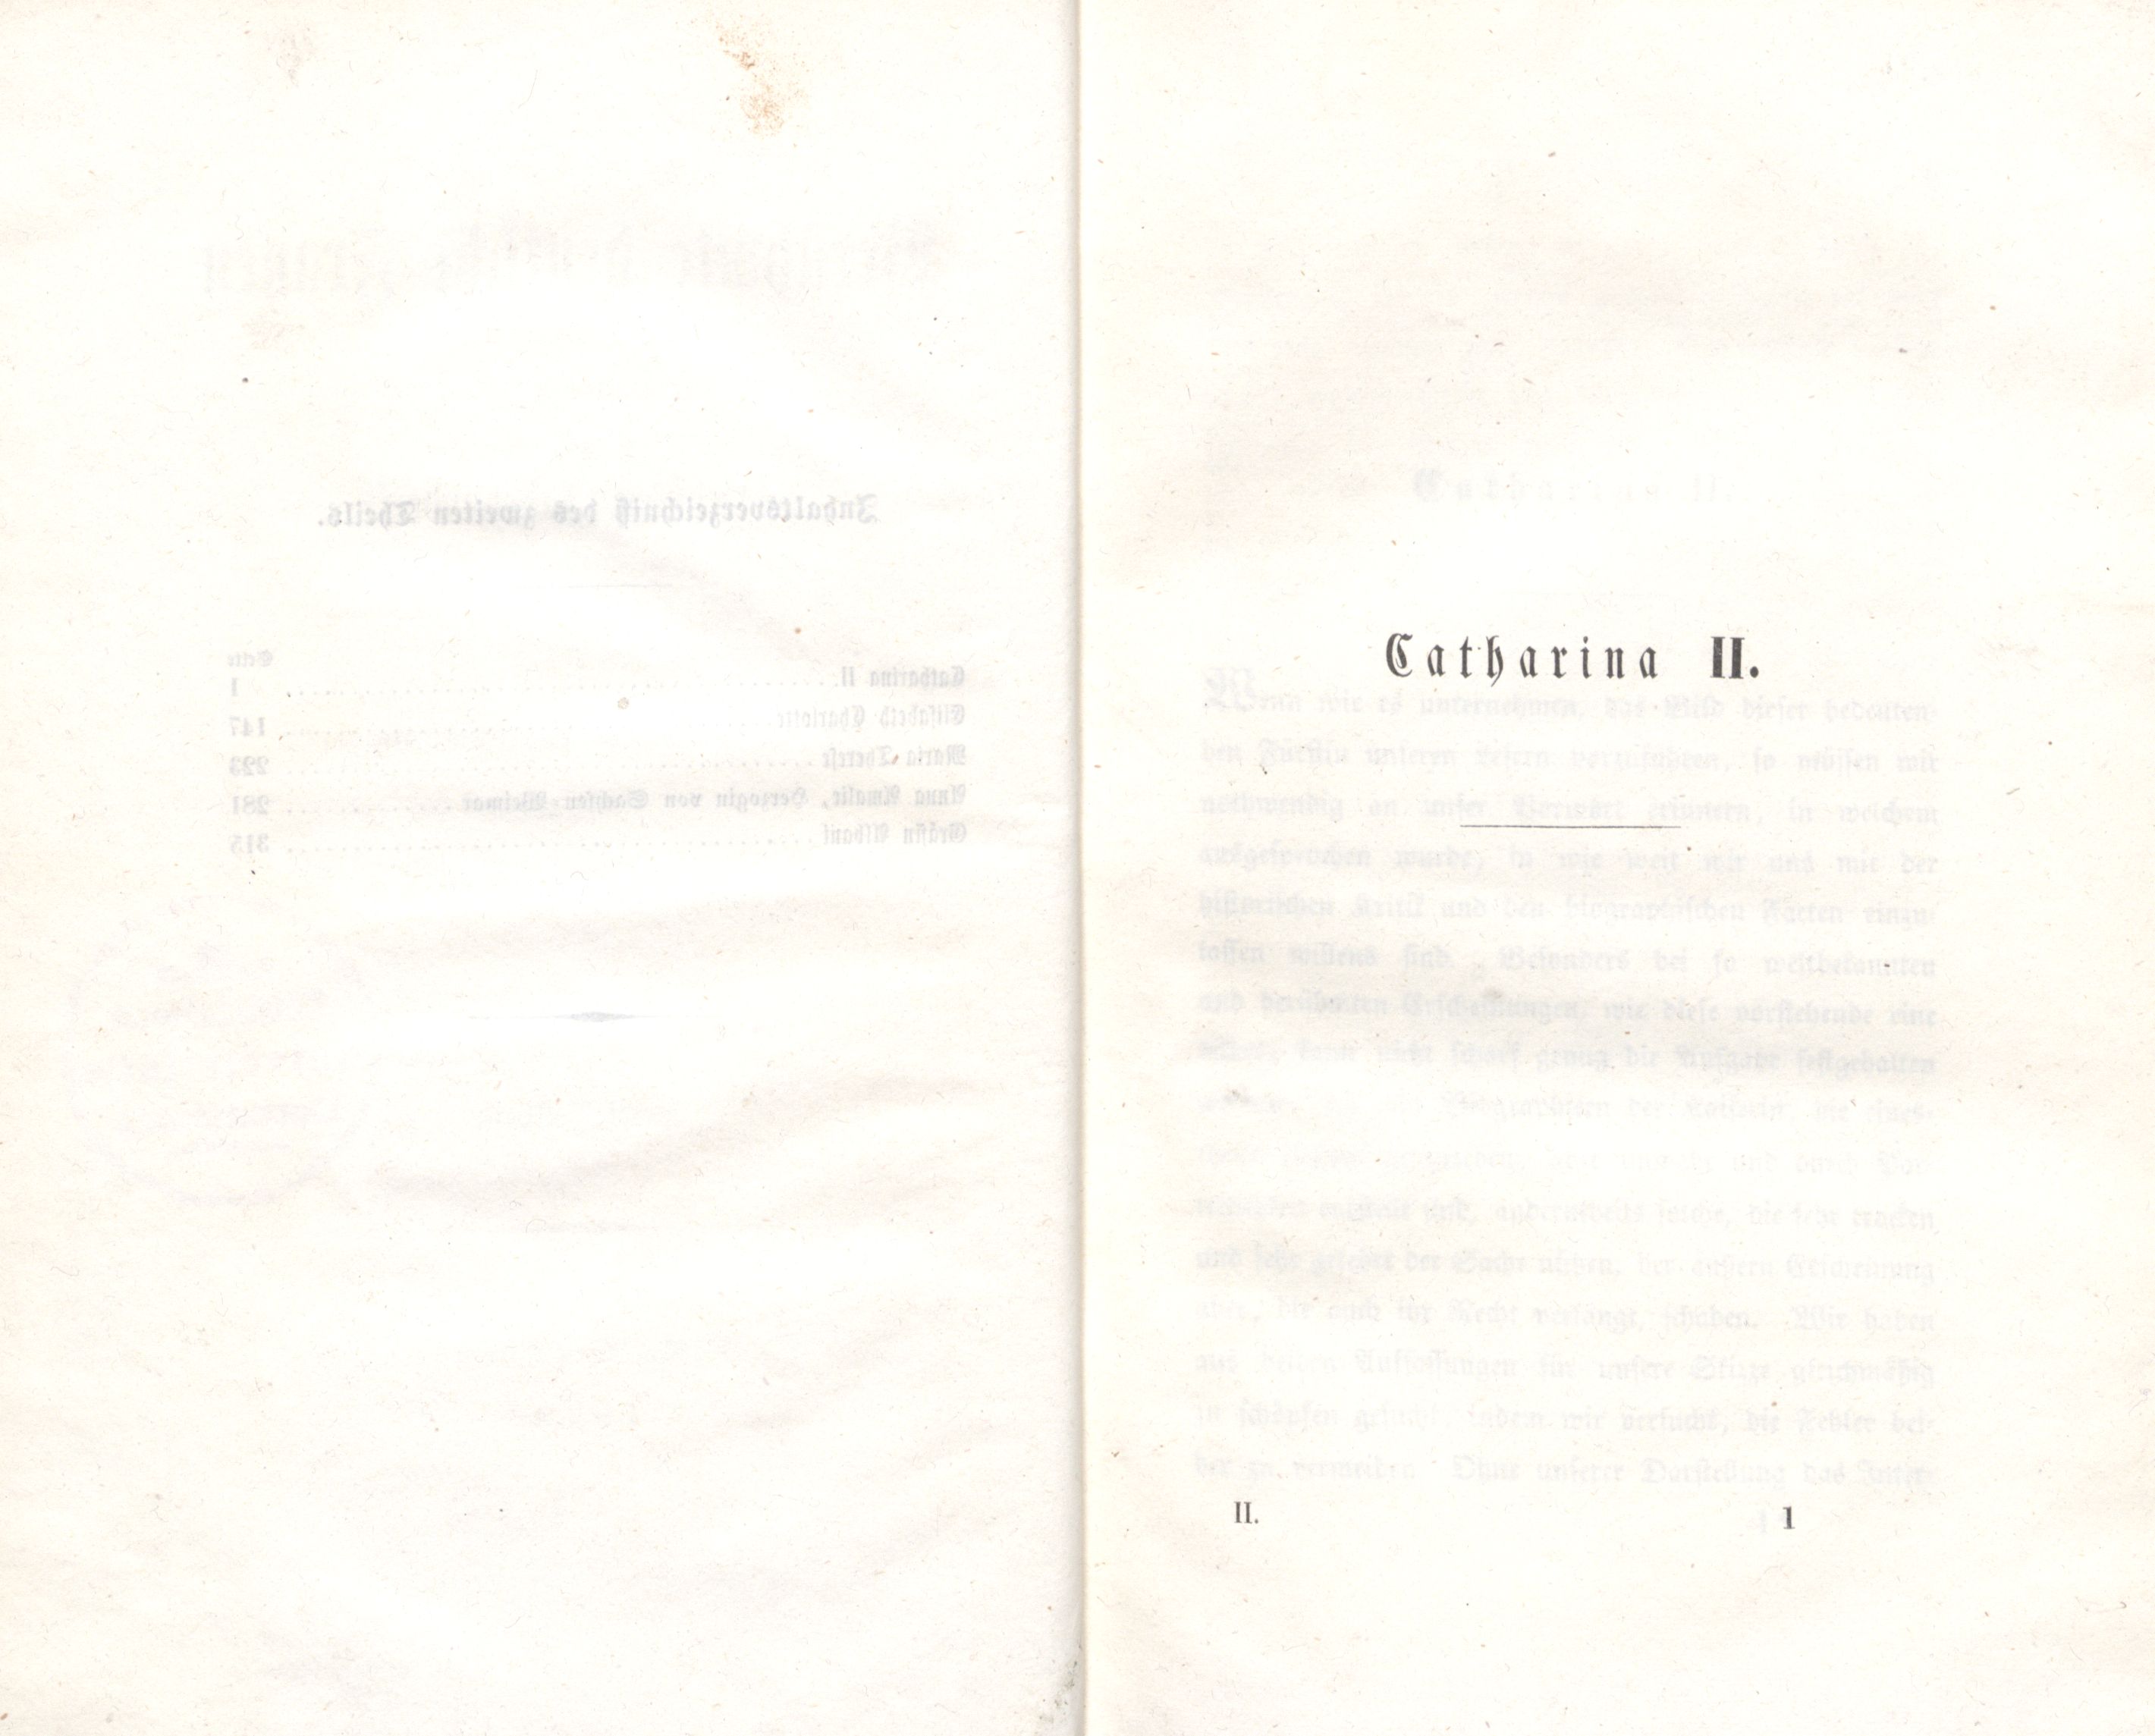 Catharina II. (1848) | 1. Main body of text